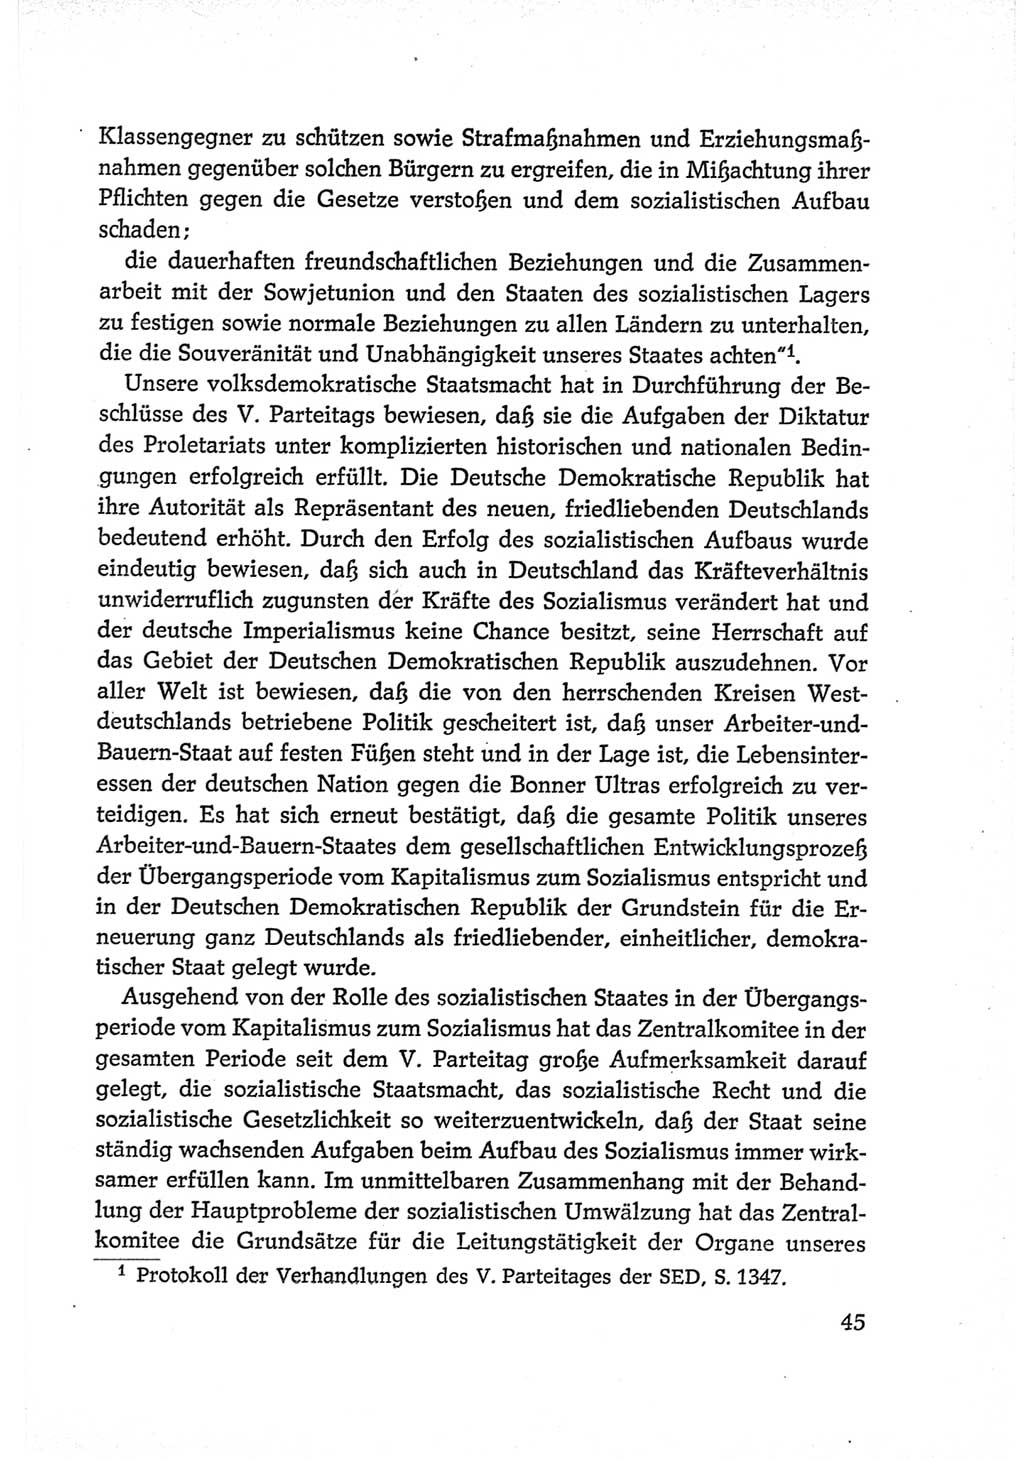 Protokoll der Verhandlungen des Ⅵ. Parteitages der Sozialistischen Einheitspartei Deutschlands (SED) [Deutsche Demokratische Republik (DDR)] 1963, Band Ⅳ, Seite 45 (Prot. Verh. Ⅵ. PT SED DDR 1963, Bd. Ⅳ, S. 45)